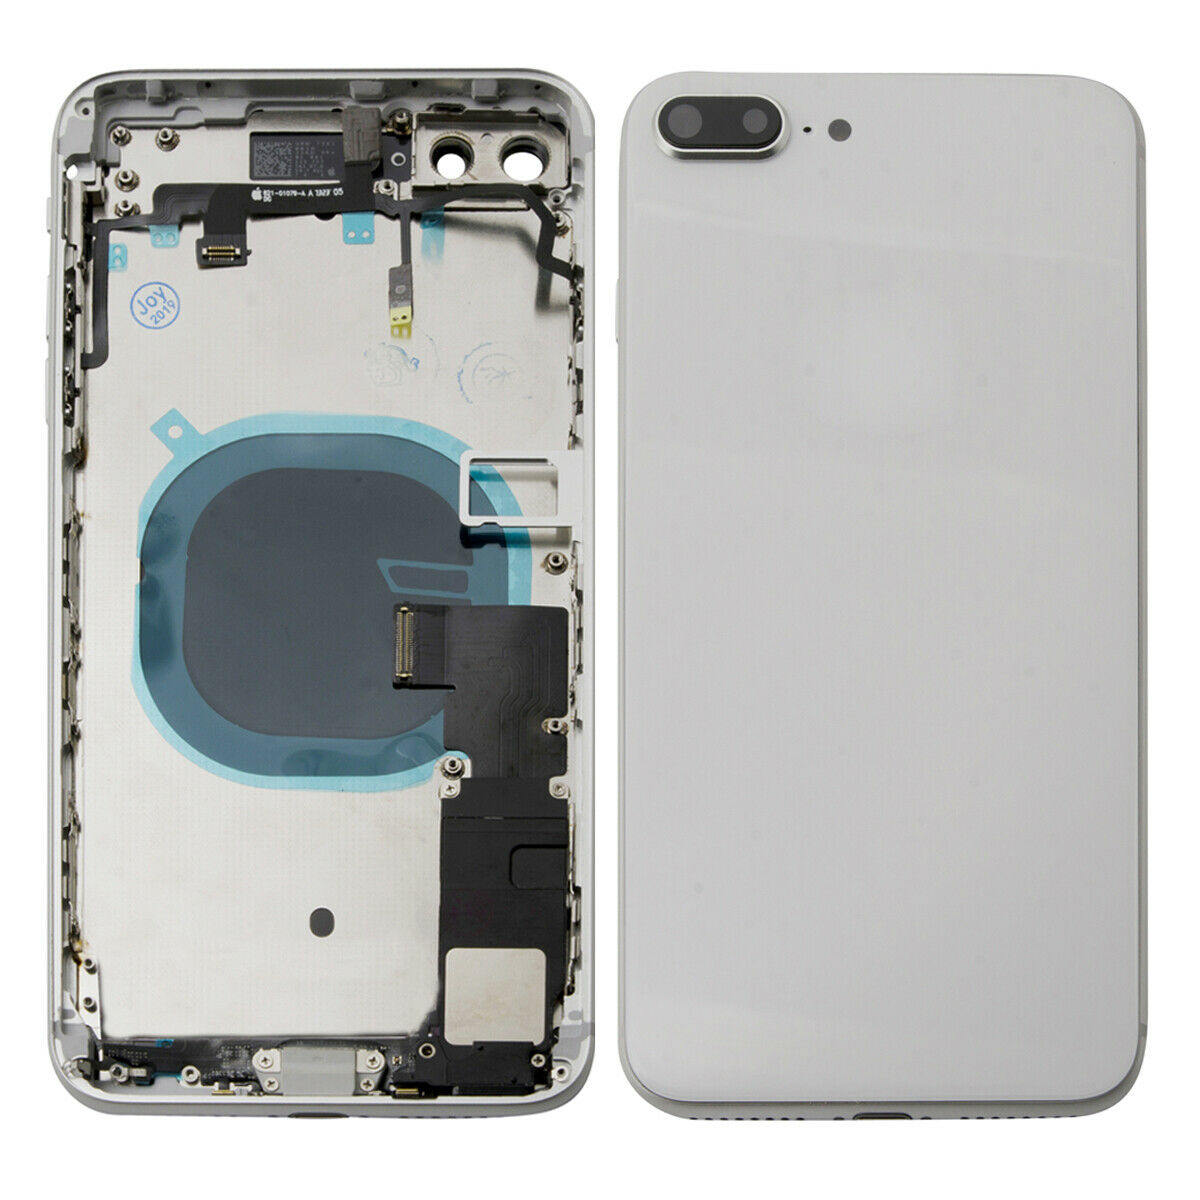 iPhone X - Carcasa completa (flex botones + dock de carga) - Smartfix